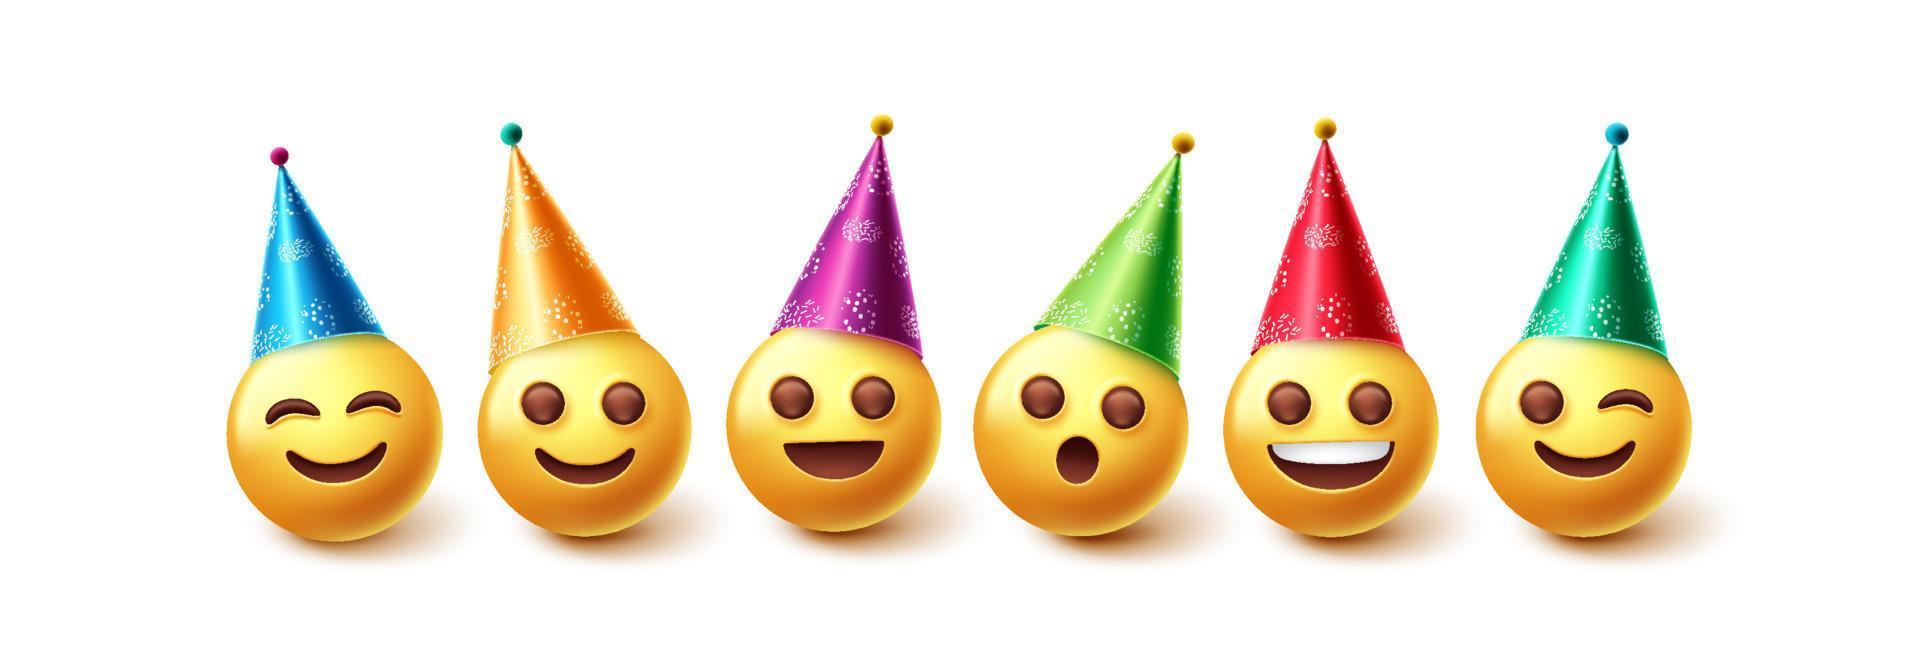 conjunto de vetores de personagens de aniversário emojis. emoji no aniversário de chapéus de festa e celebração de evento com expressão de sorriso feliz para o design de coleção de personagens emoji celebrantes. ilustração vetorial.